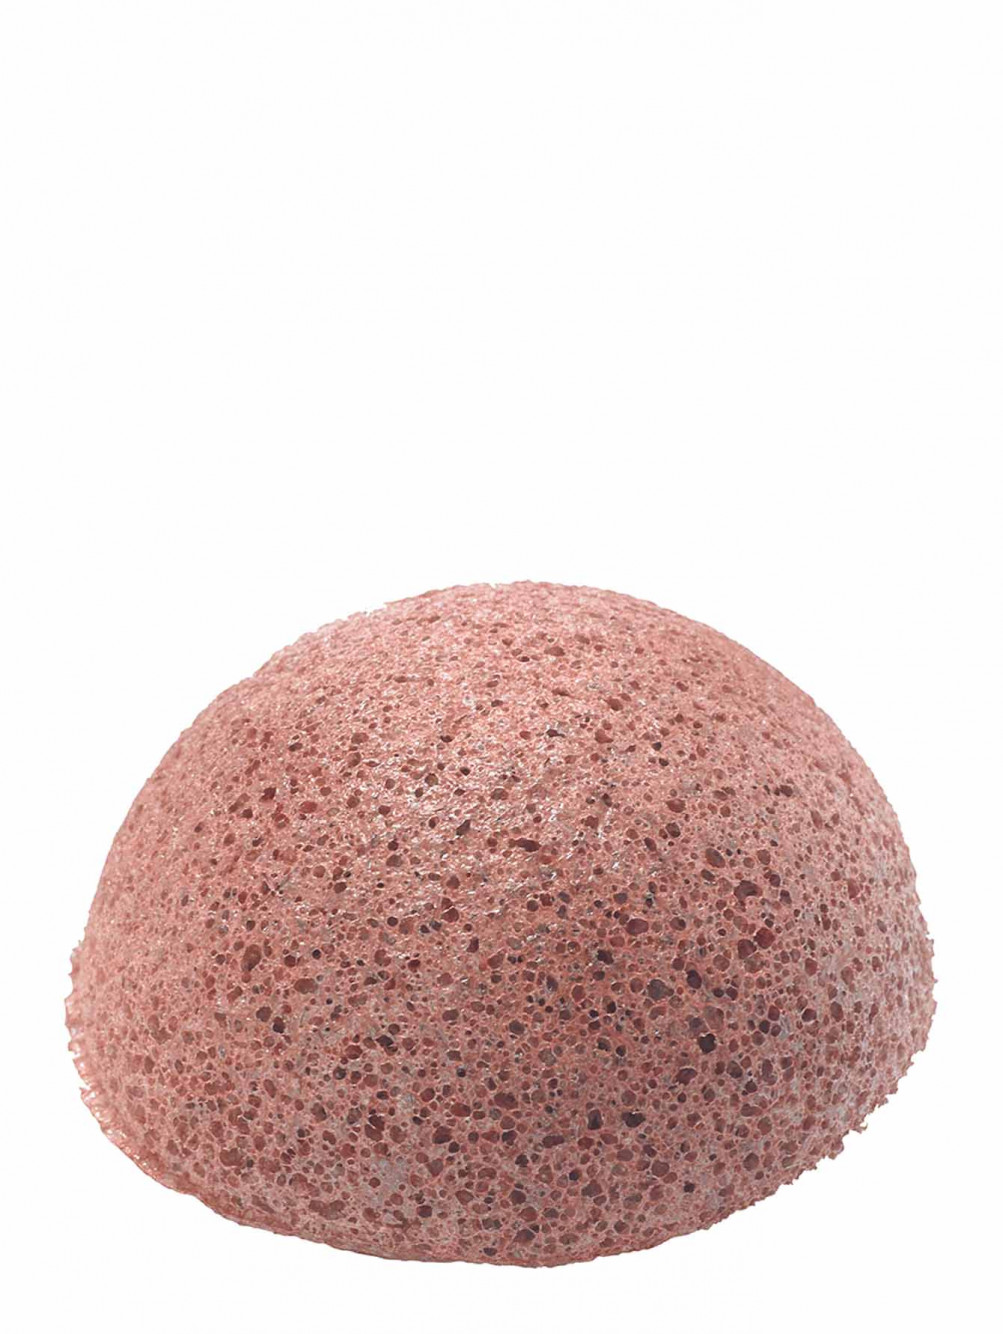 Натуральный спонж конняку из красной глины Natural Konjac Sponge - Общий вид